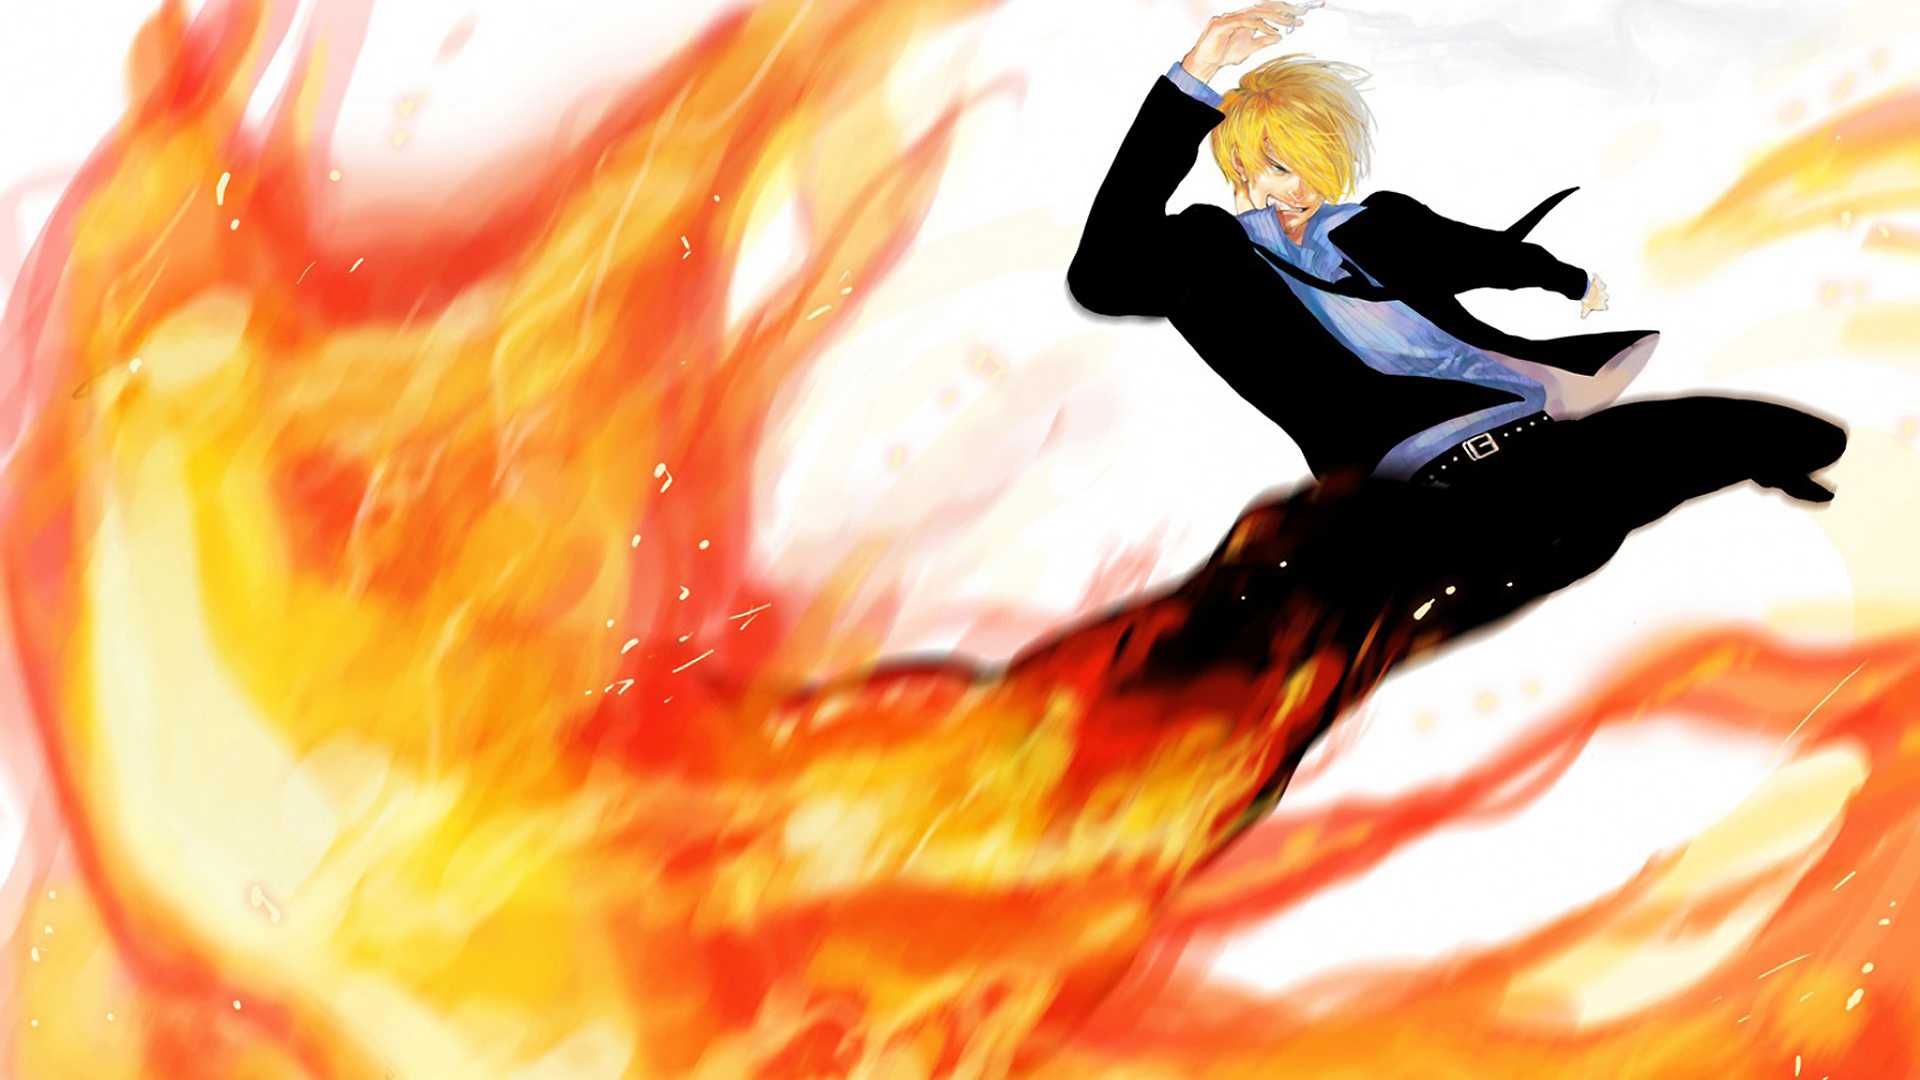 Với ảnh nền One Piece Sanji, bạn sẽ được giới thiệu với một trong những nhân vật hấp dẫn nhất trong series này. Sanji không chỉ có kĩ năng chiến đấu đáng kinh ngạc mà còn sở hữu một cá tính độc đáo và bộ trang phục đầy hấp dẫn. Hãy cùng nhìn ngắm ảnh nền này để khám phá thêm về Sanji nhé!